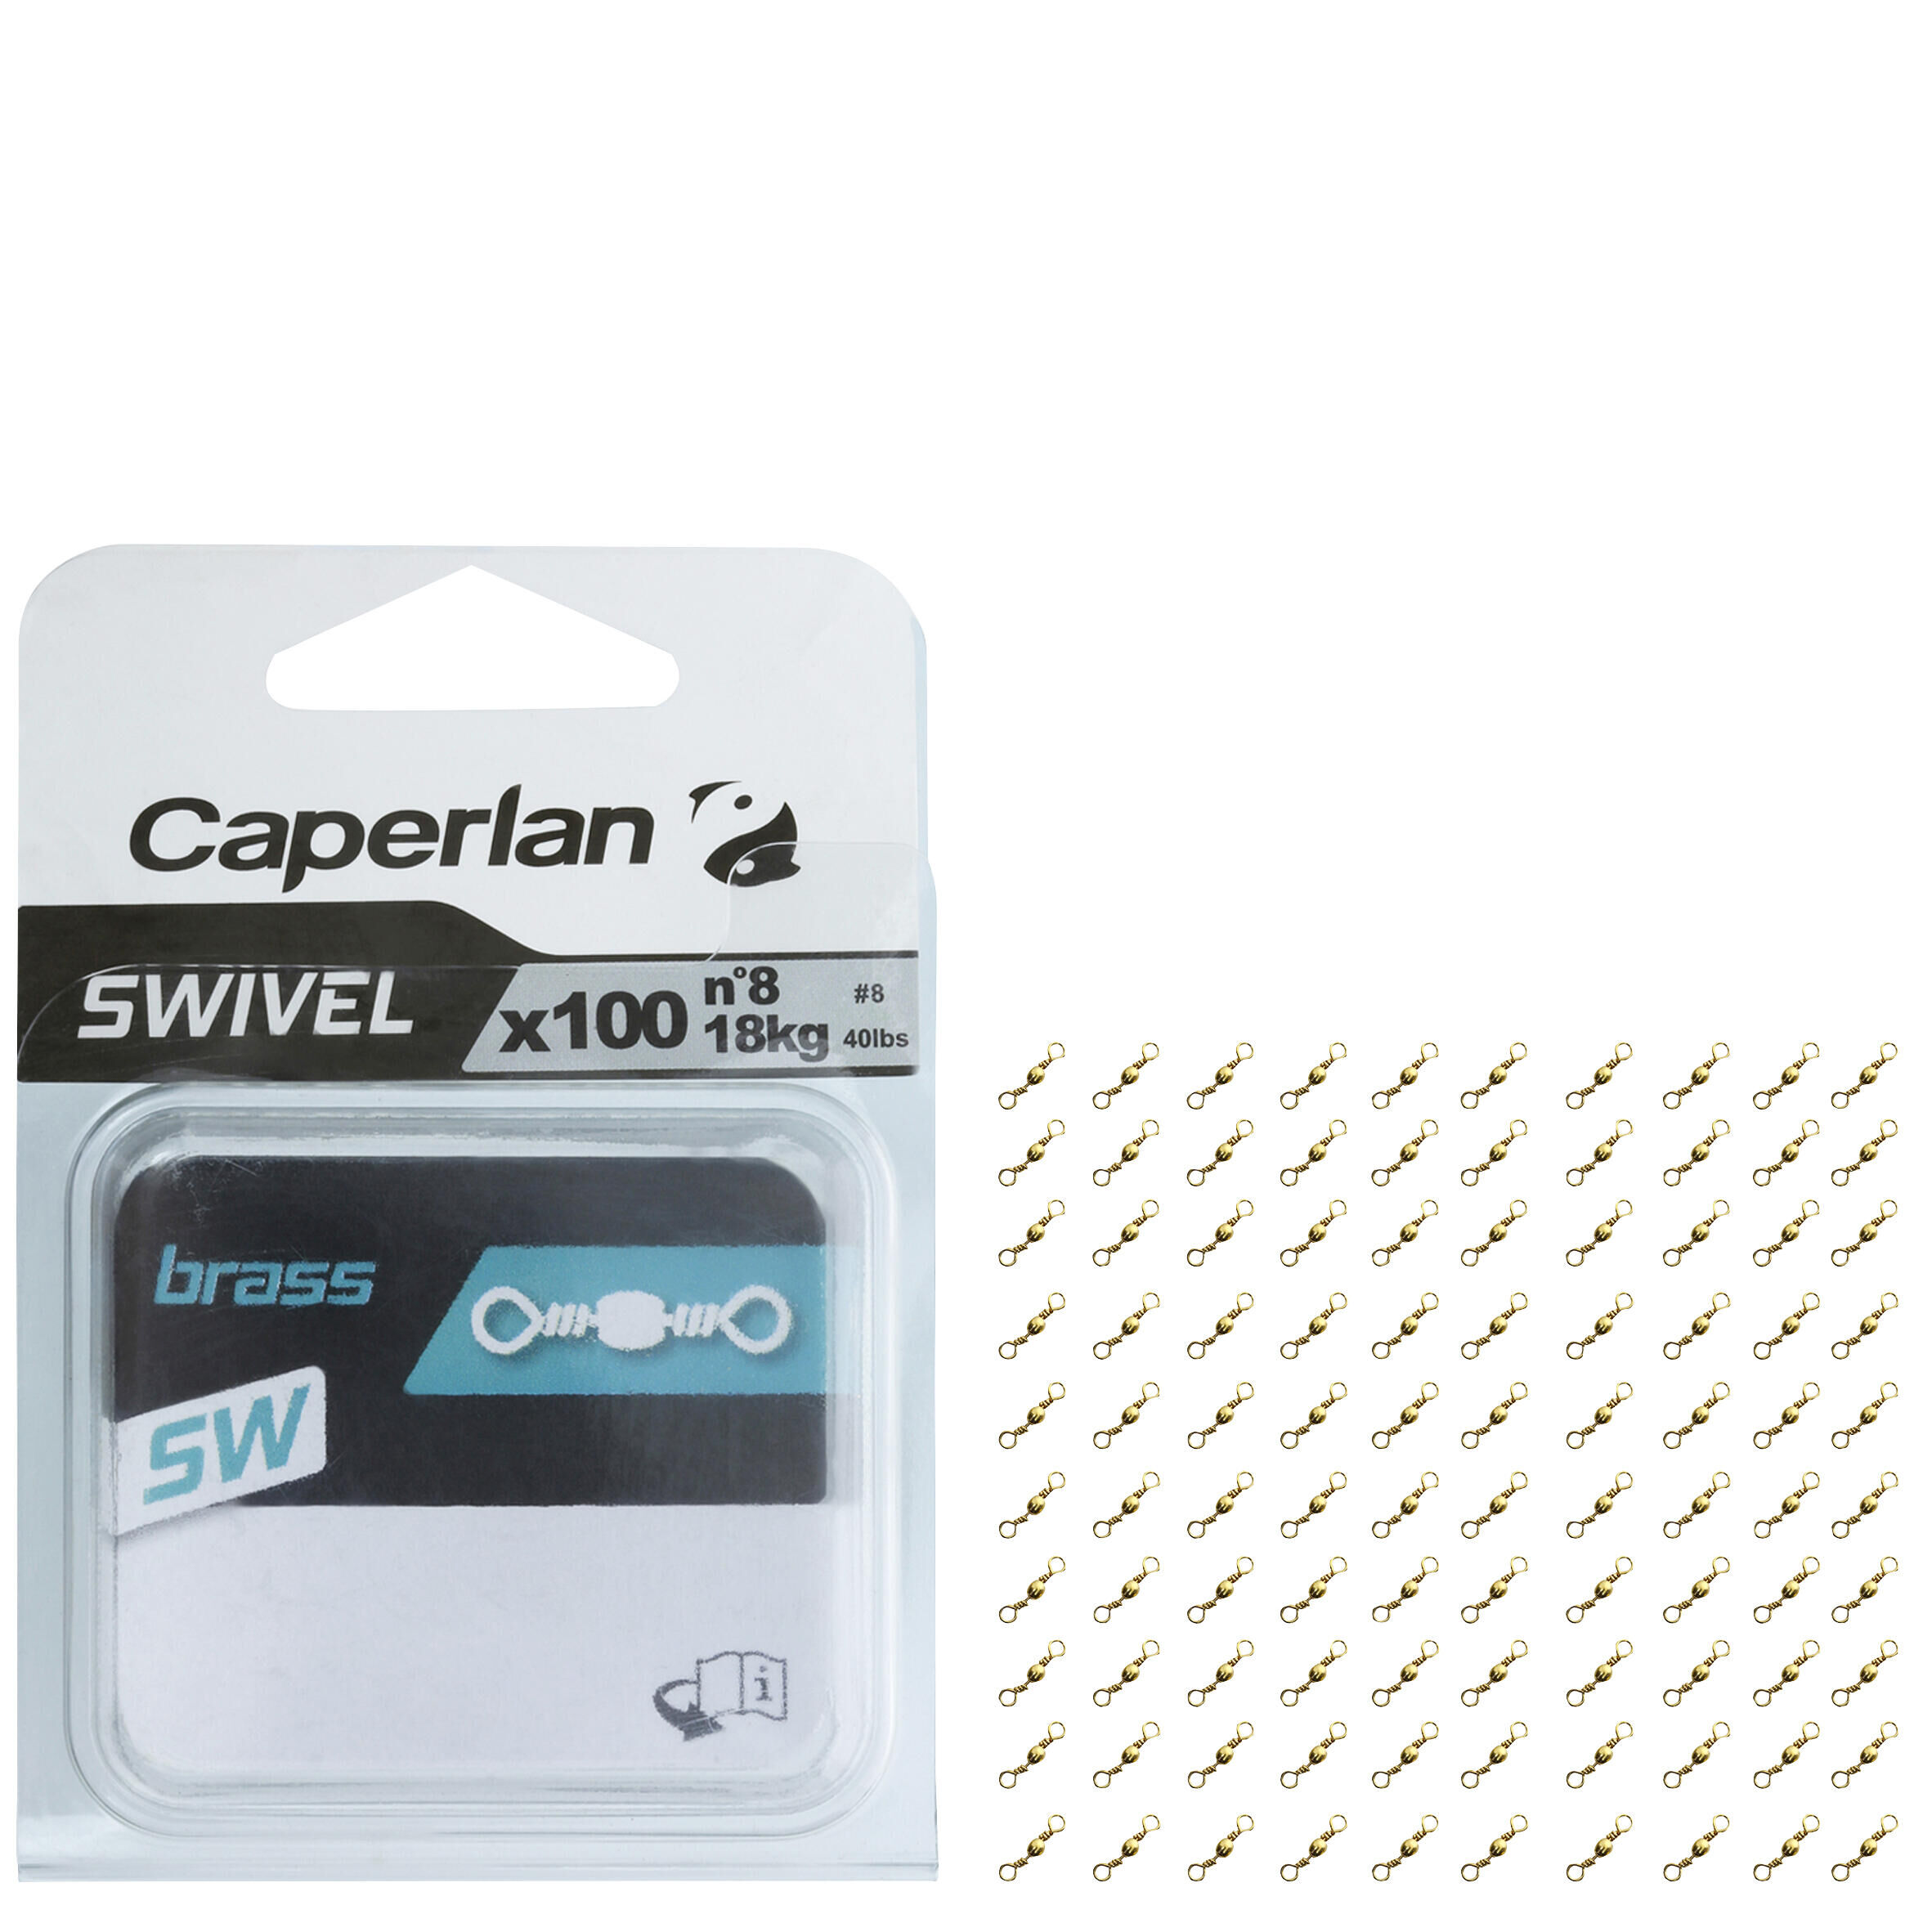 CAPERLAN BRASS SWIVEL SW X100 FISHING SWIVEL